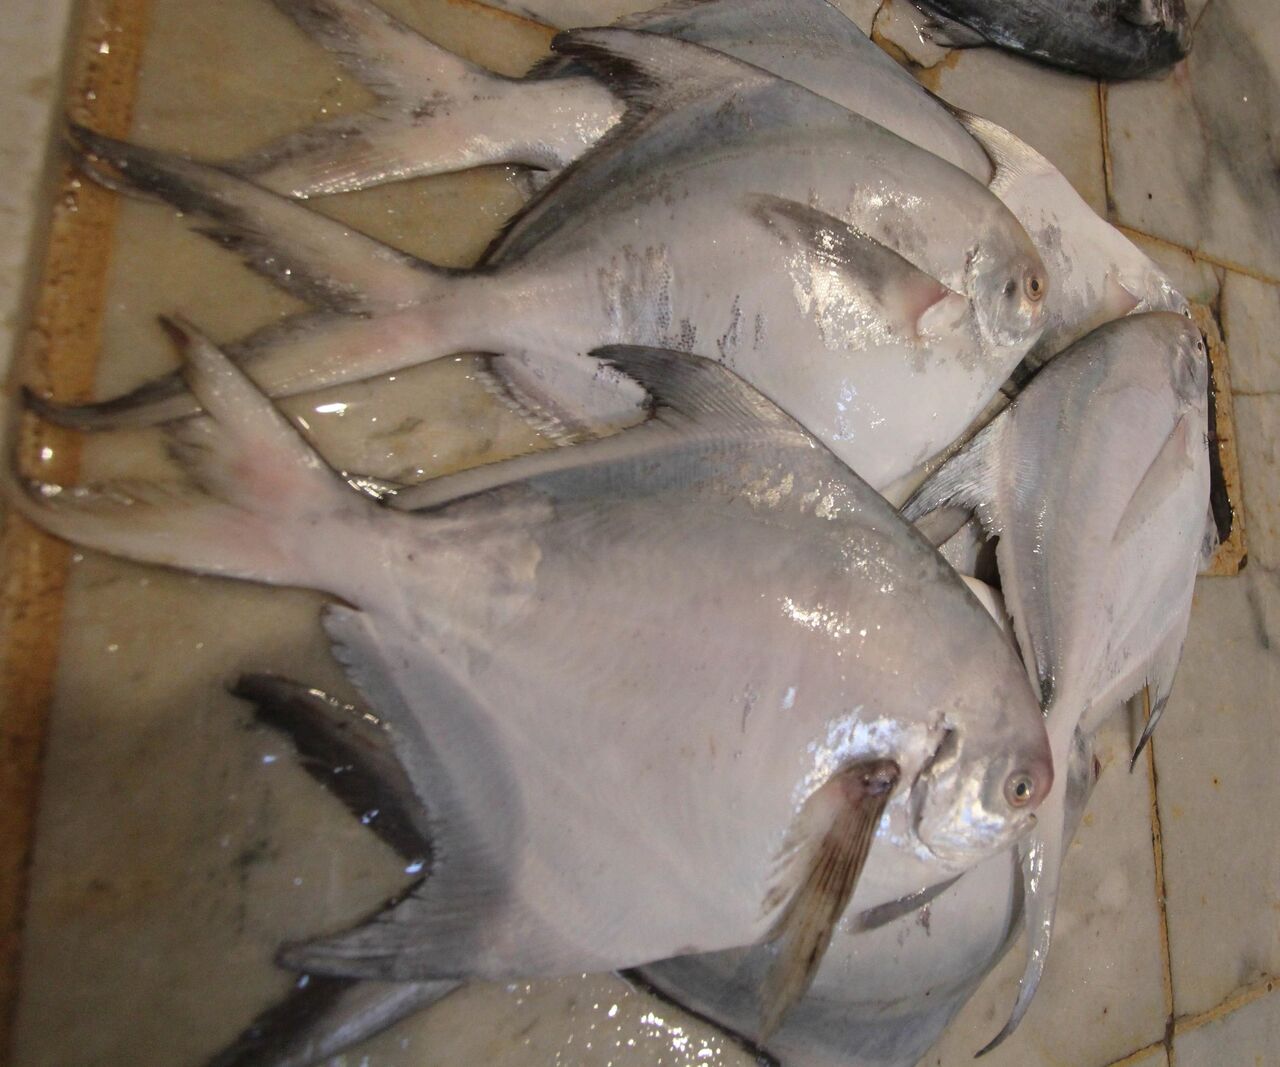 صید ماهی حلواسفید در آبهای خوزستان و بوشهر آزاد شد